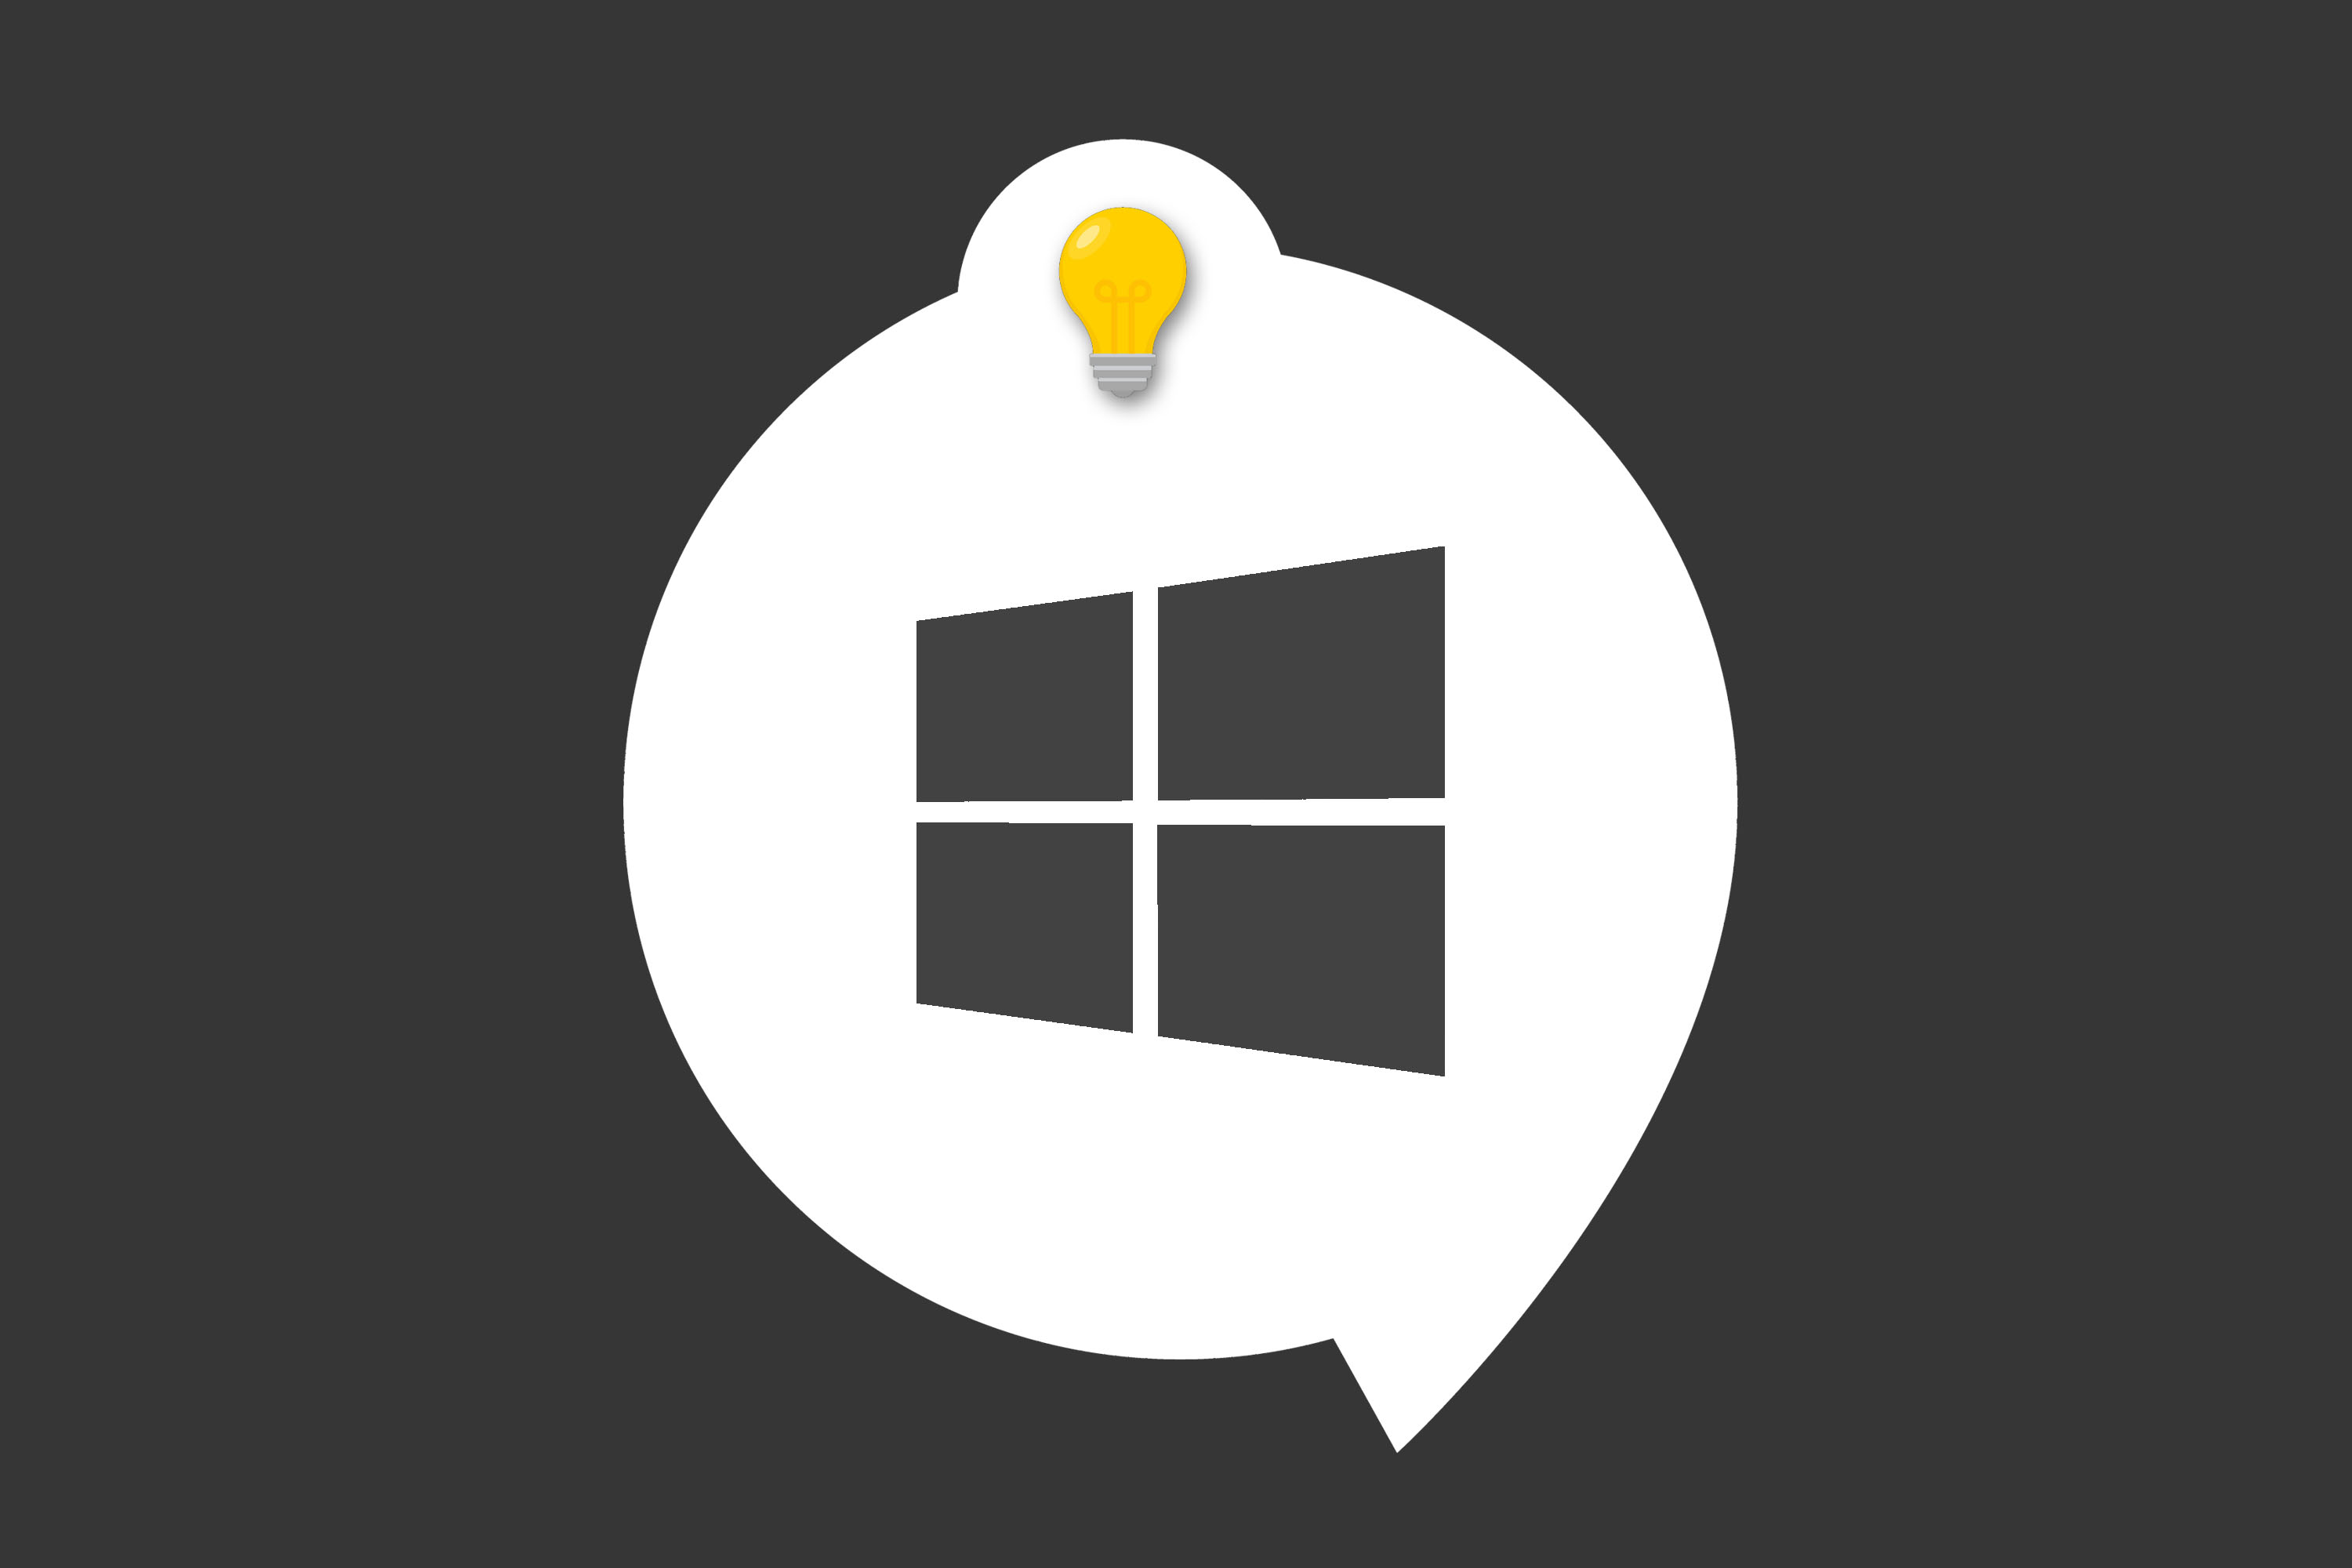 Vous pouvez lancer vos applications avec vos propres raccourcis clavier sur Windows 10